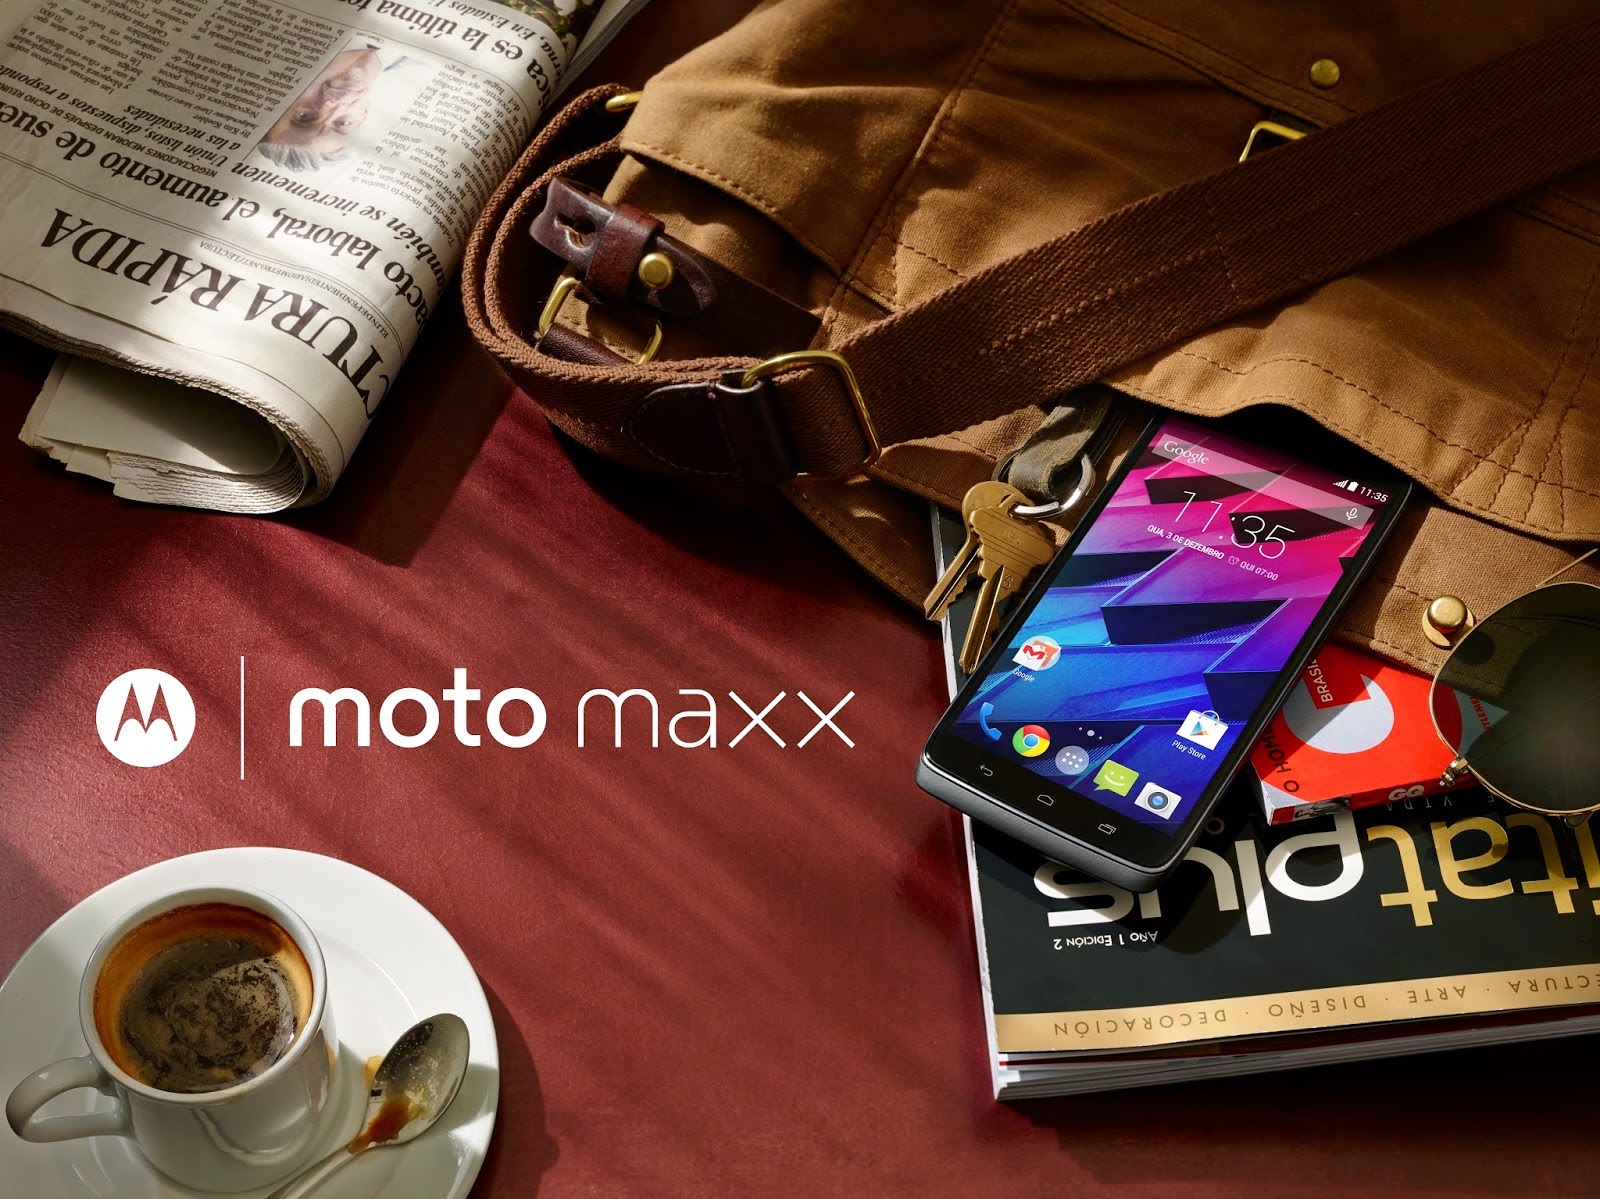 بعد طول إنتظار هاتف DROID TURBO متوفر في نسخة عالمية تحث مسمى MOTO MAXX